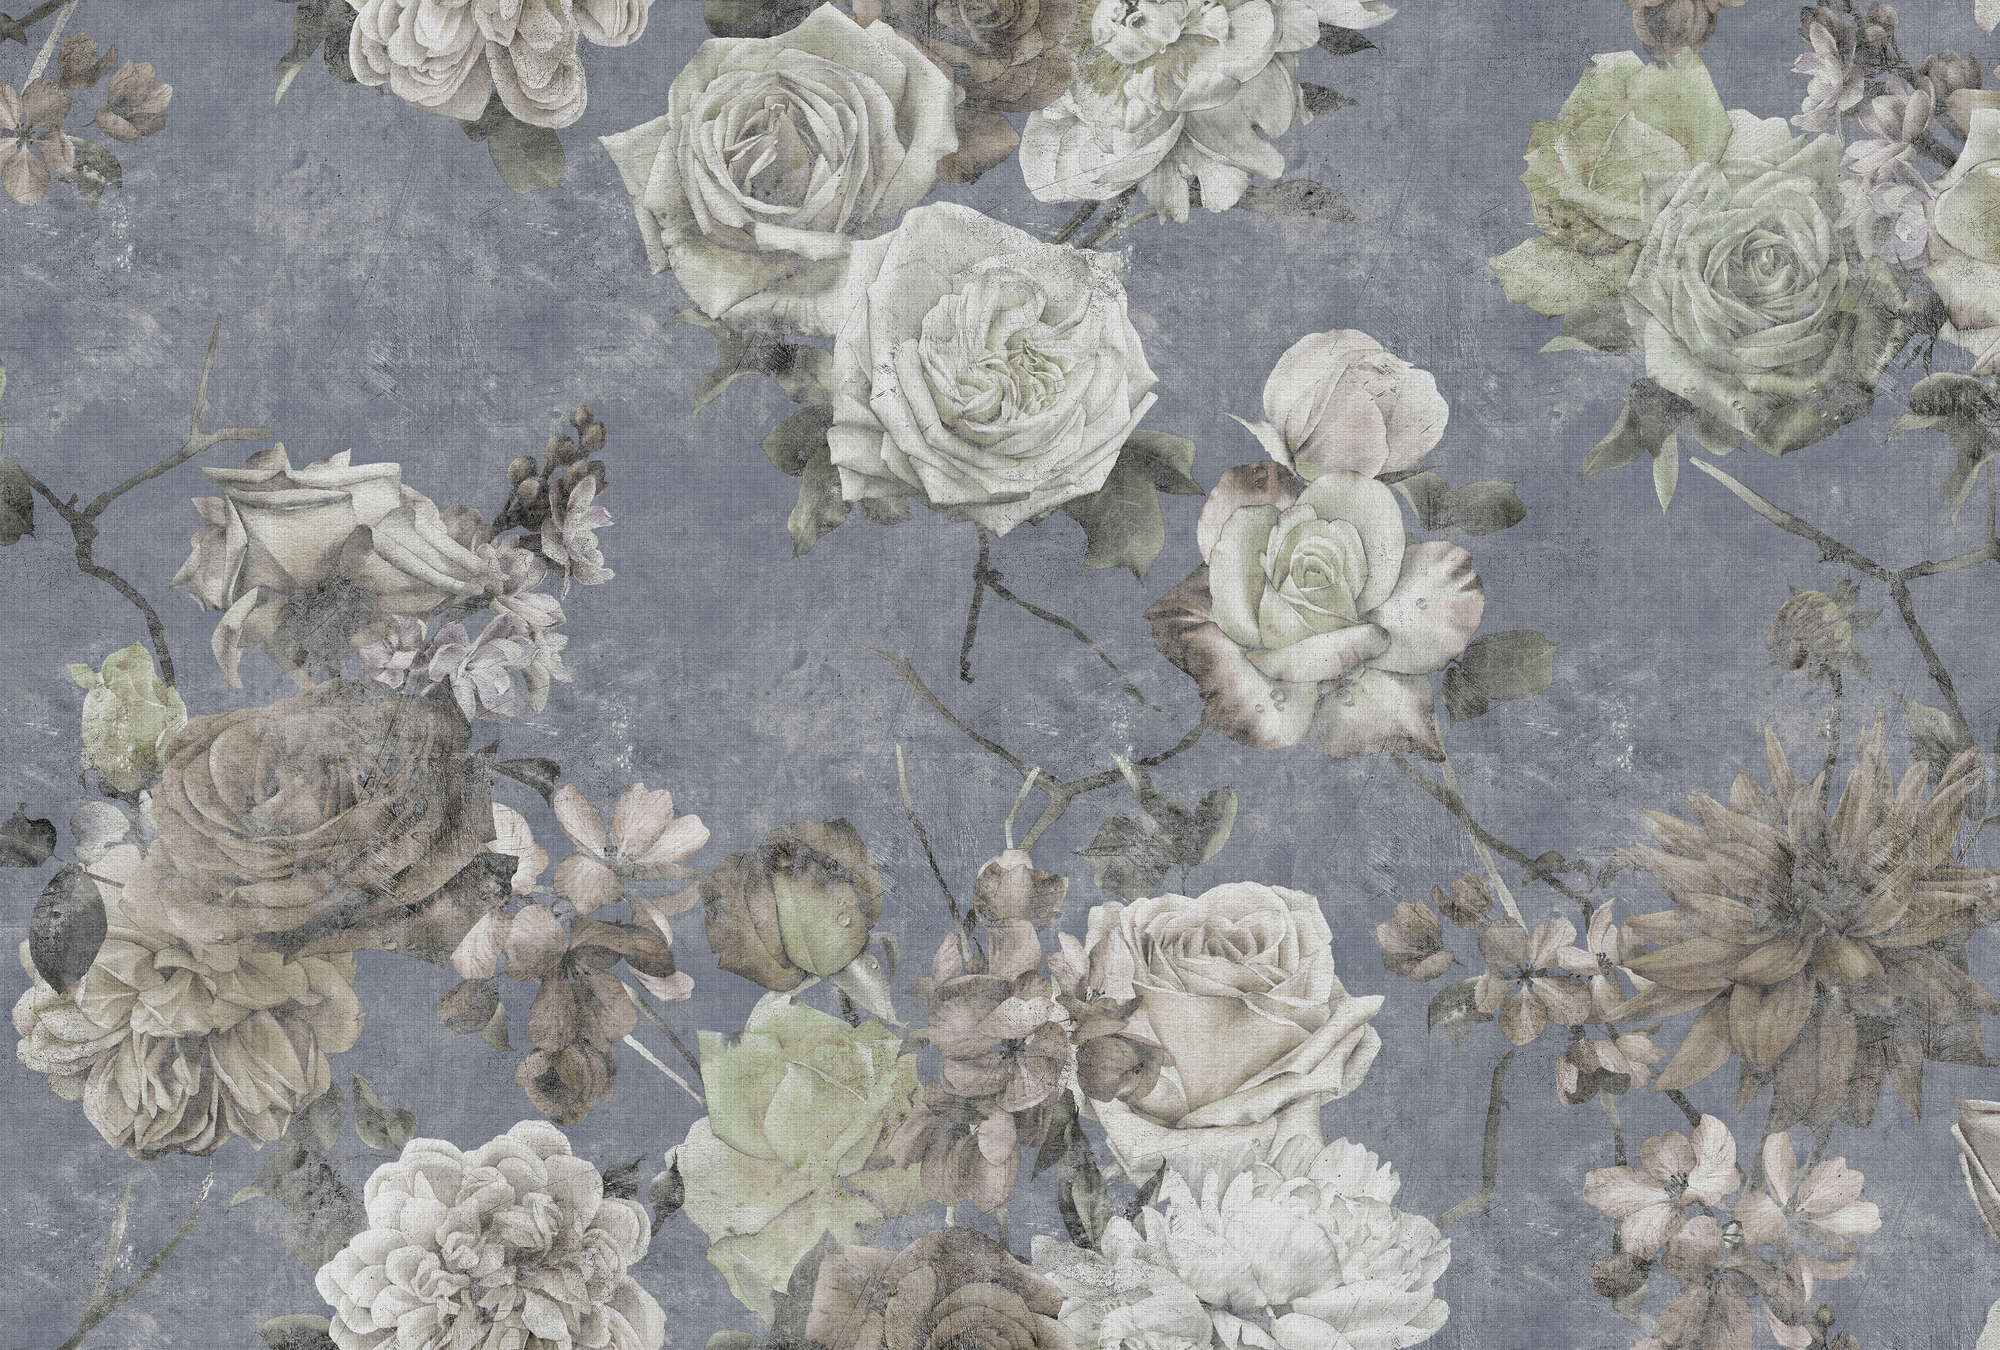             Sleeping Beauty 3 - Rose Wallpaper in Vintage Used Look- Natuurlijke Linnen Textuur - Blauw, Wit | Premium Smooth Vliesbehang
        